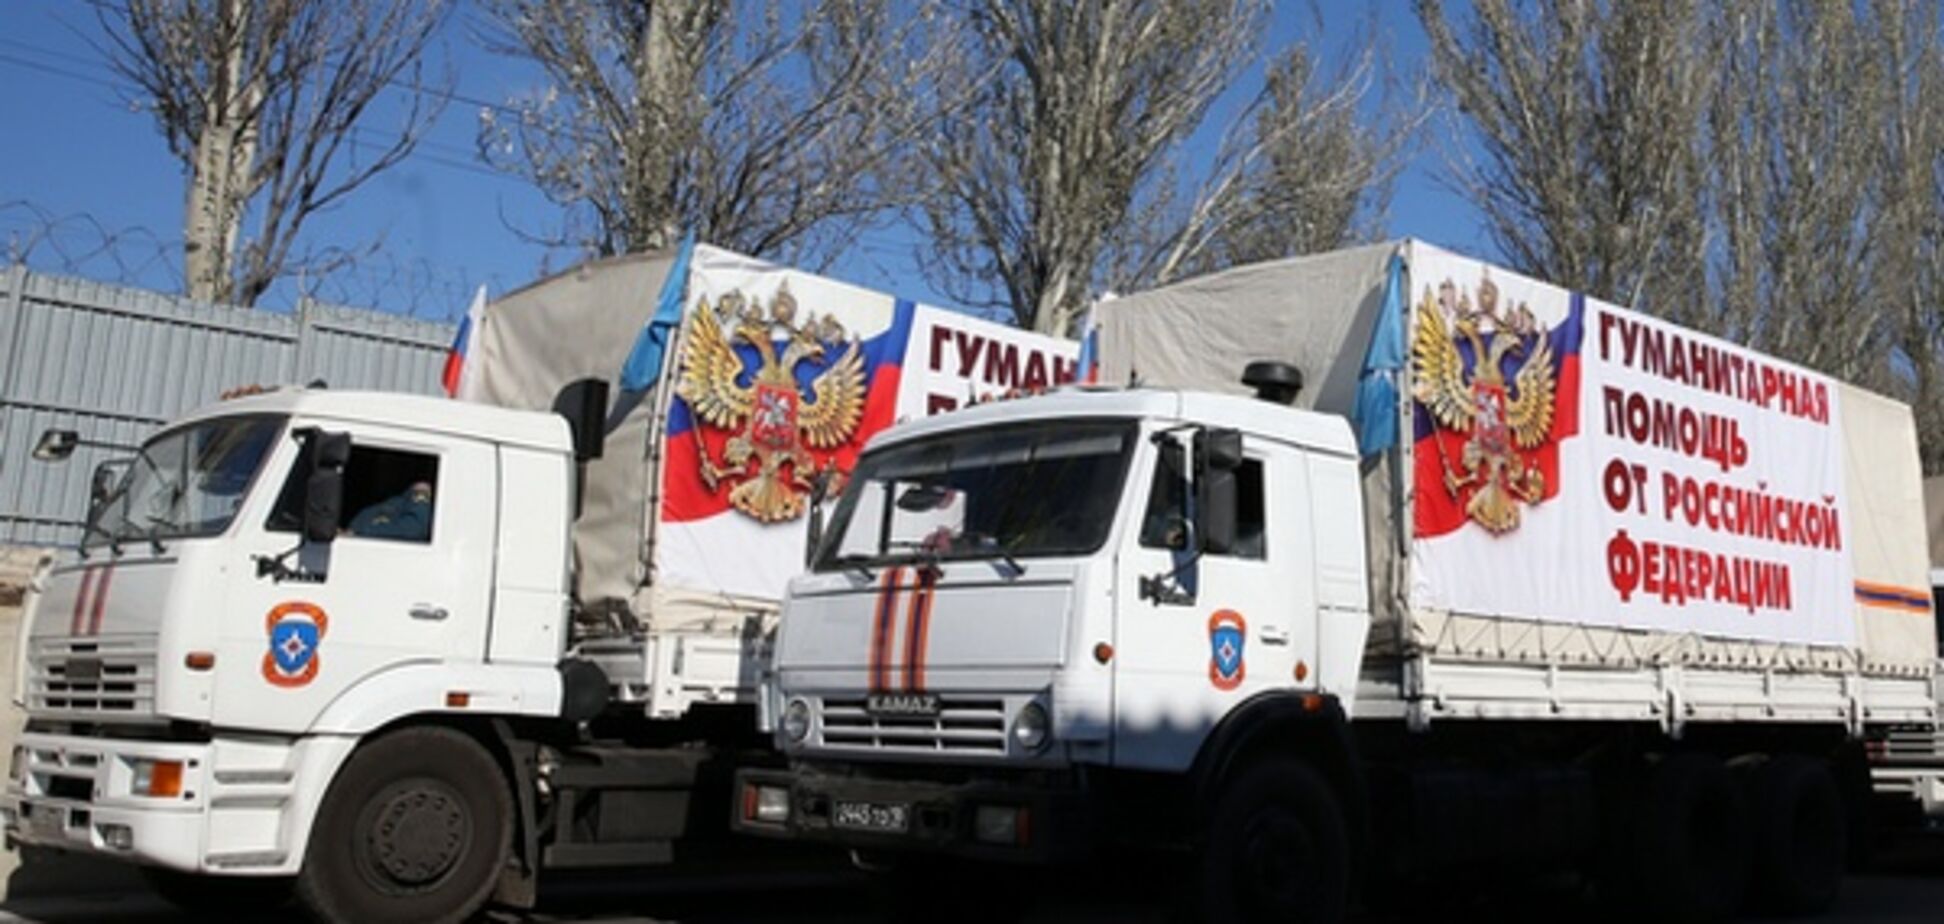 С подарками ко Дню Независимости: Путин отправил на Донбасс внушительный 'гумконвой'